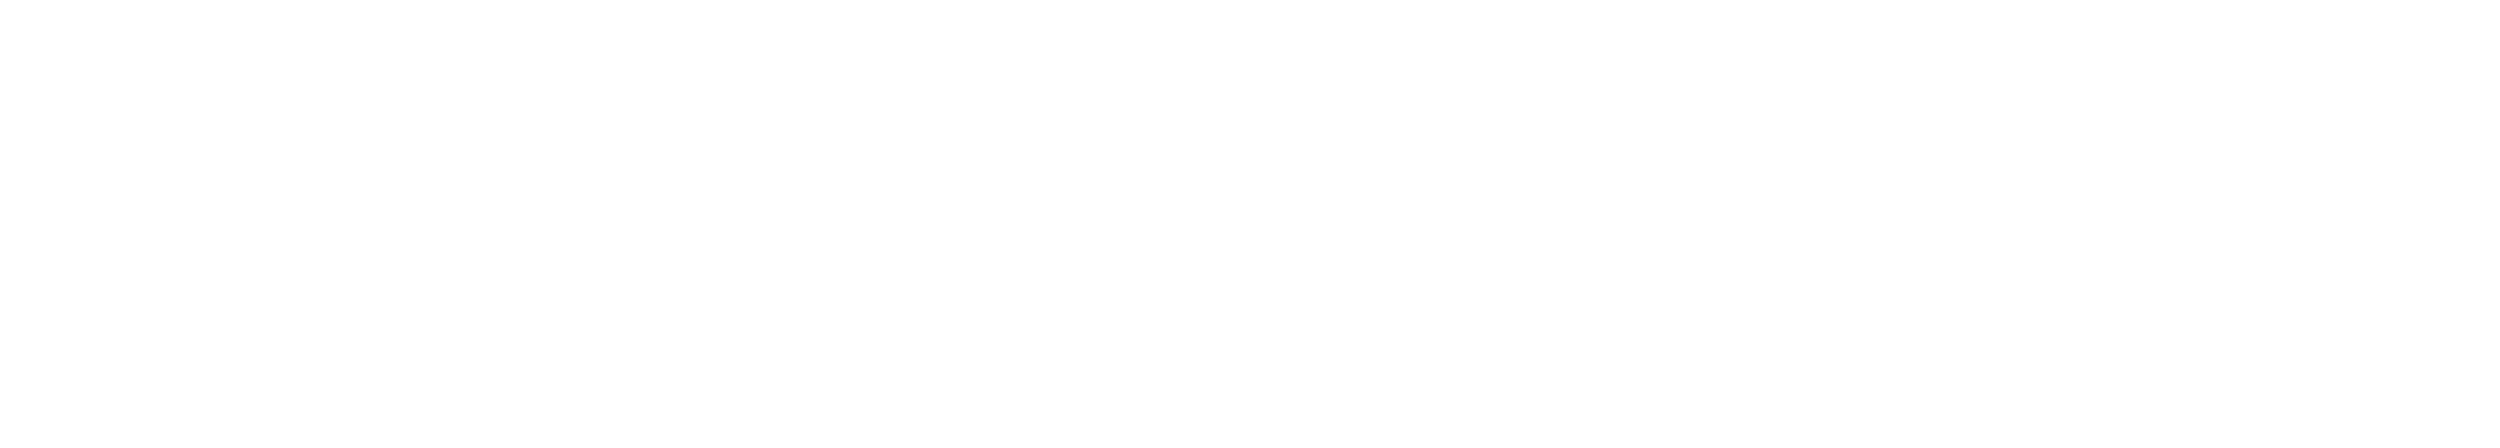 Park City Concierge Services